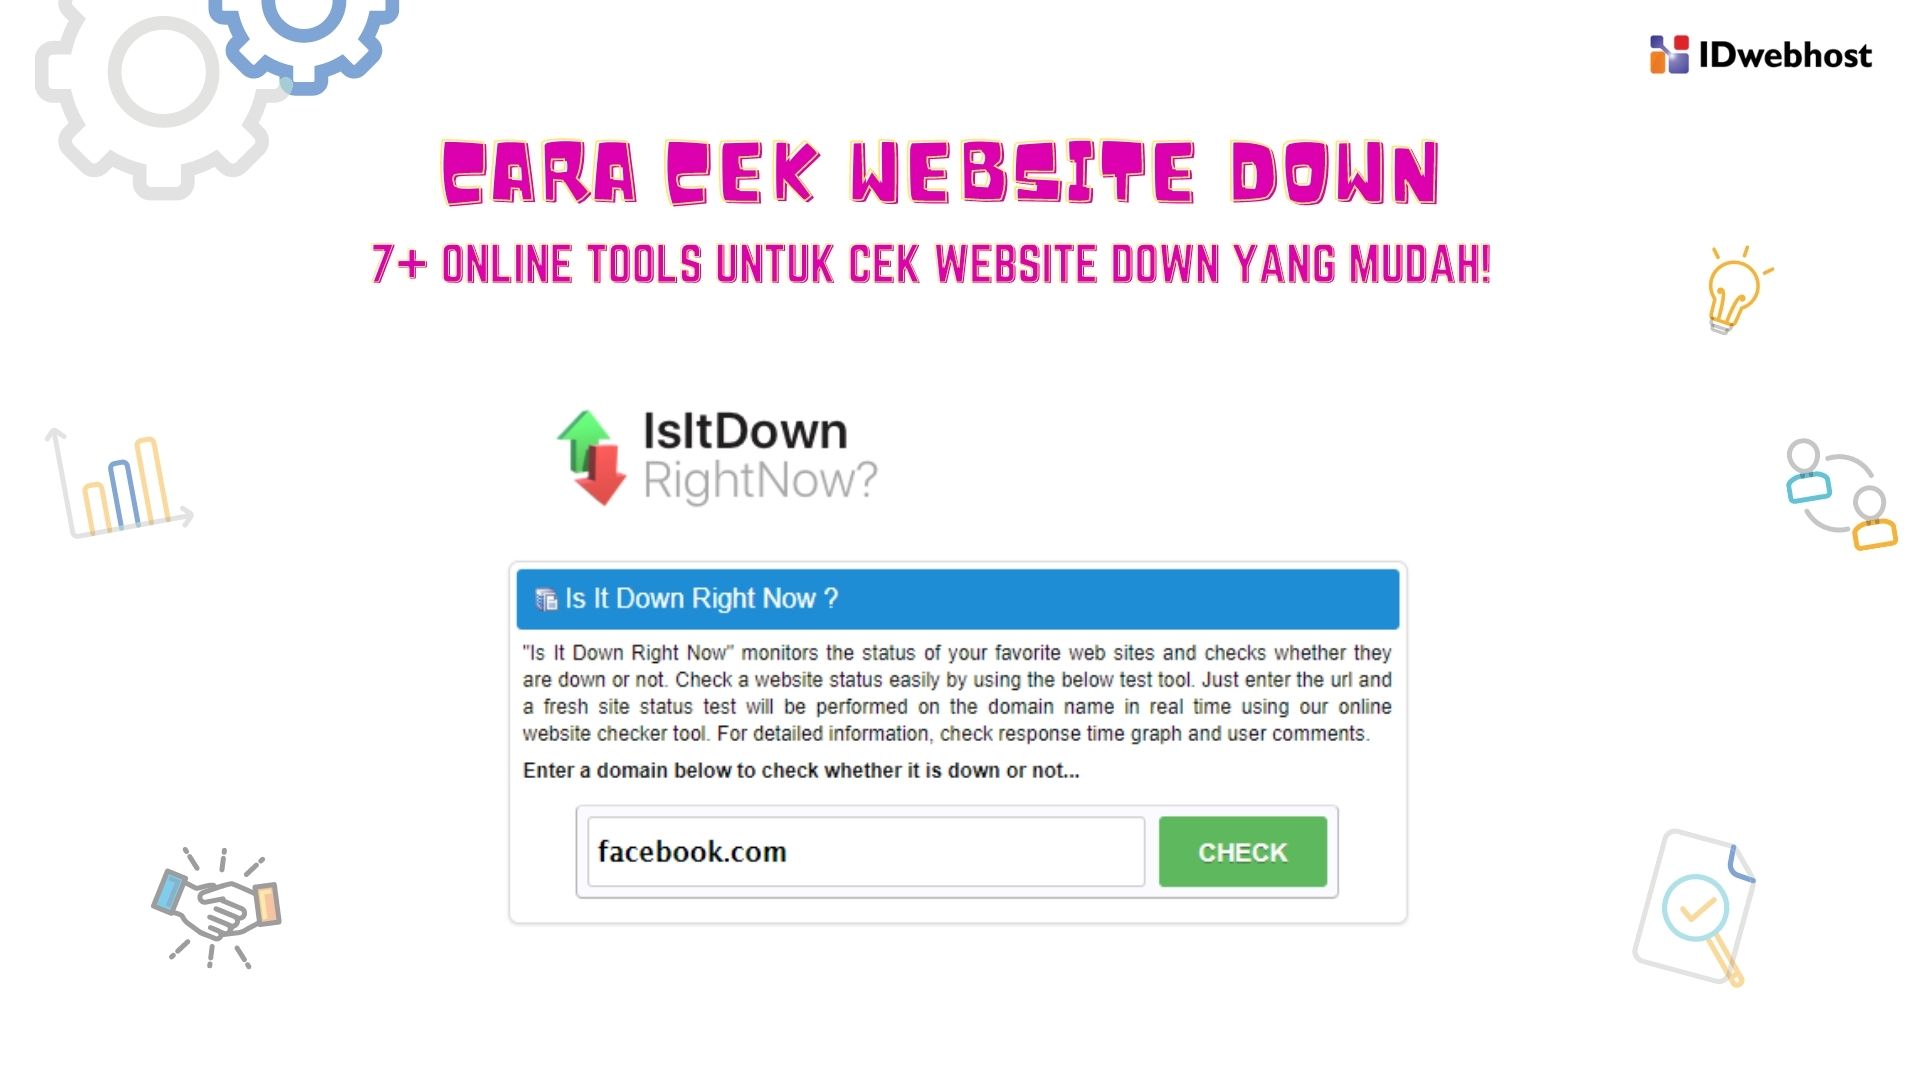 Cek Website Down